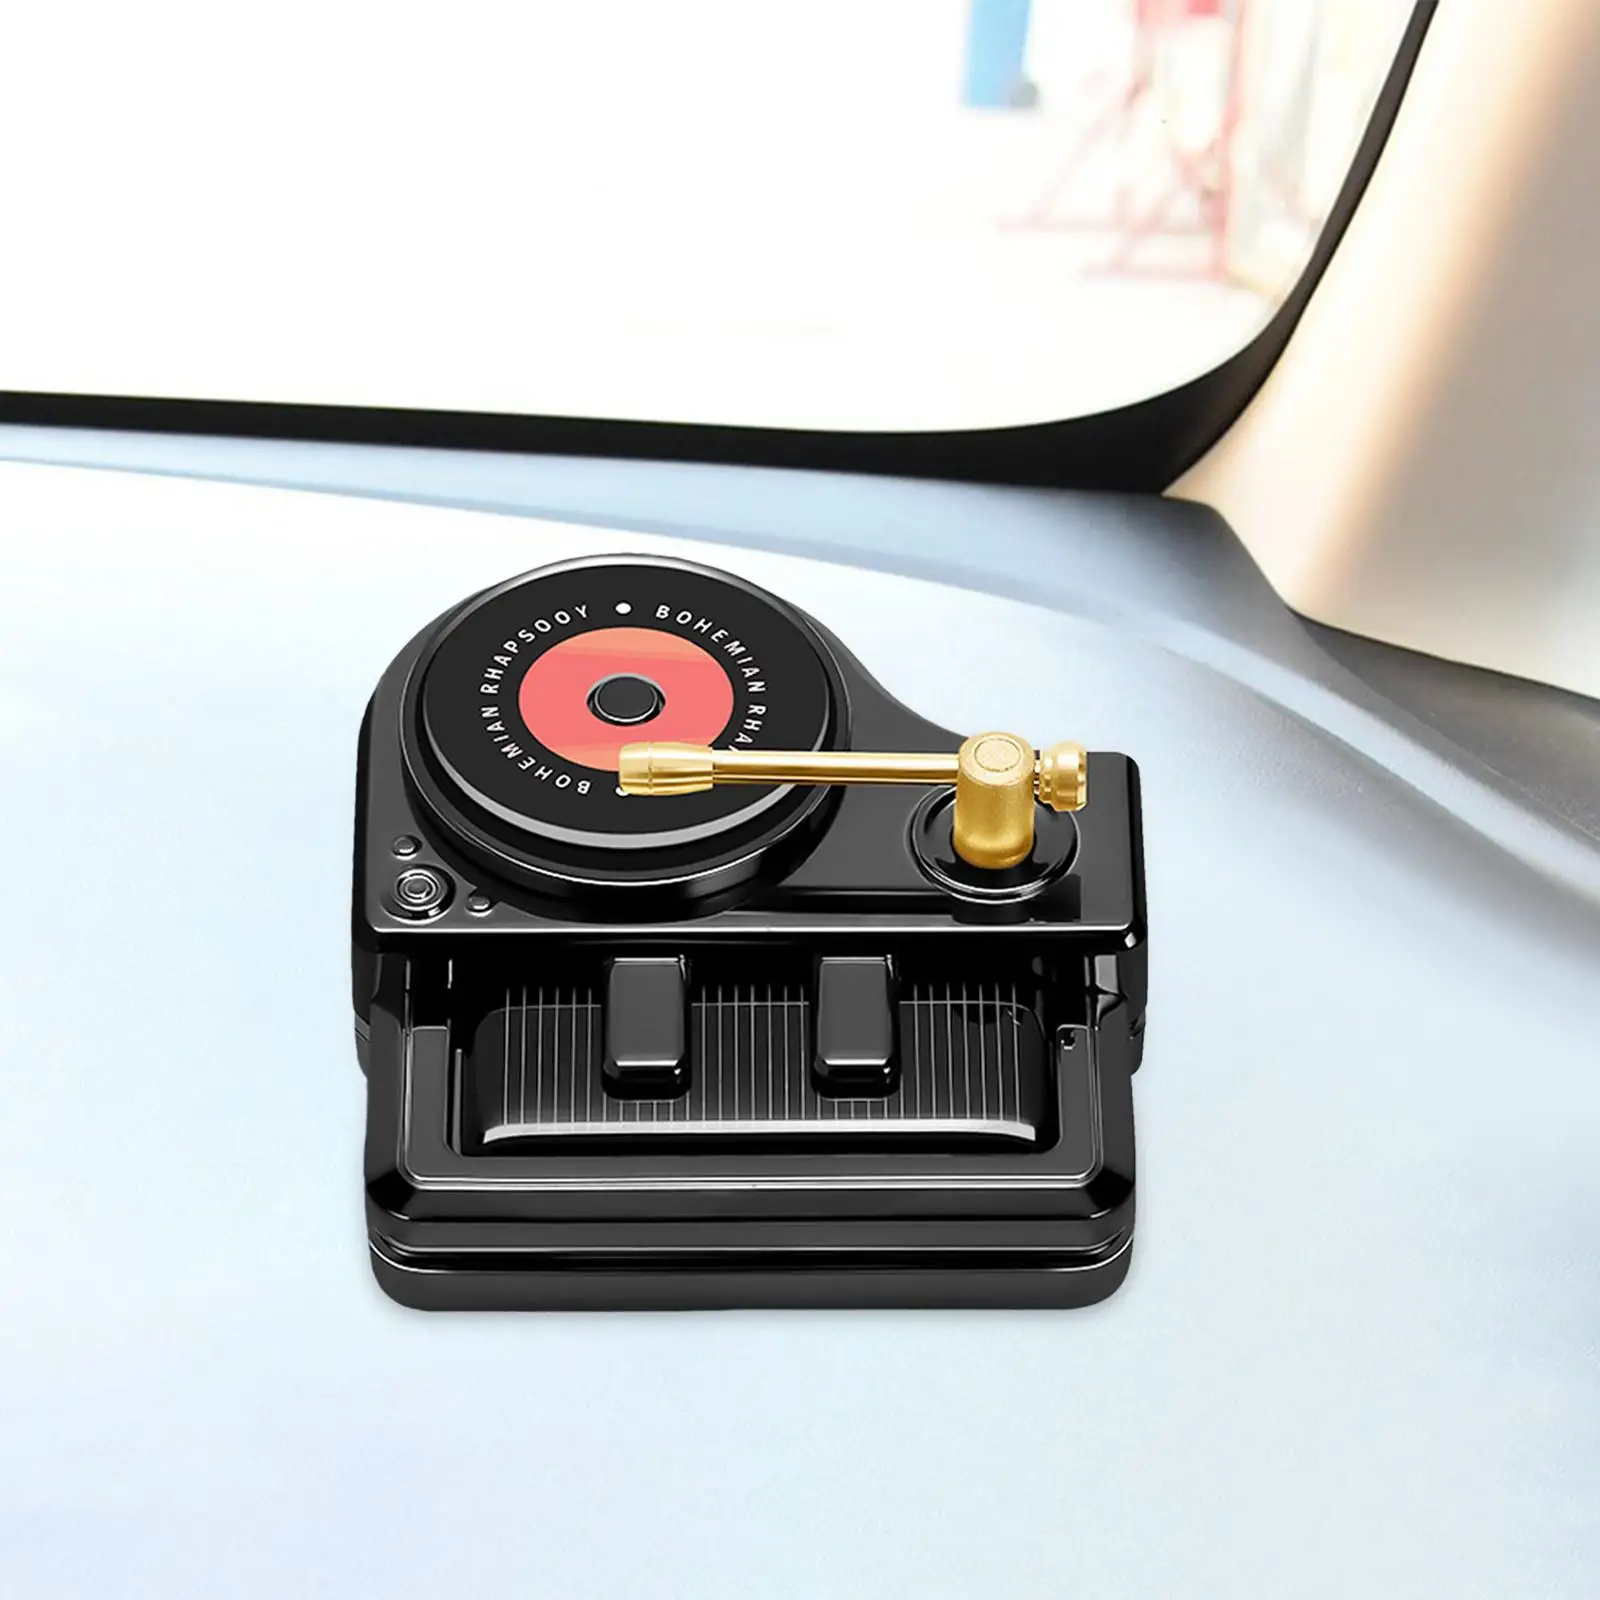 Car Diffuser Portable Car Air for Coffee Shop Bathroom Travel